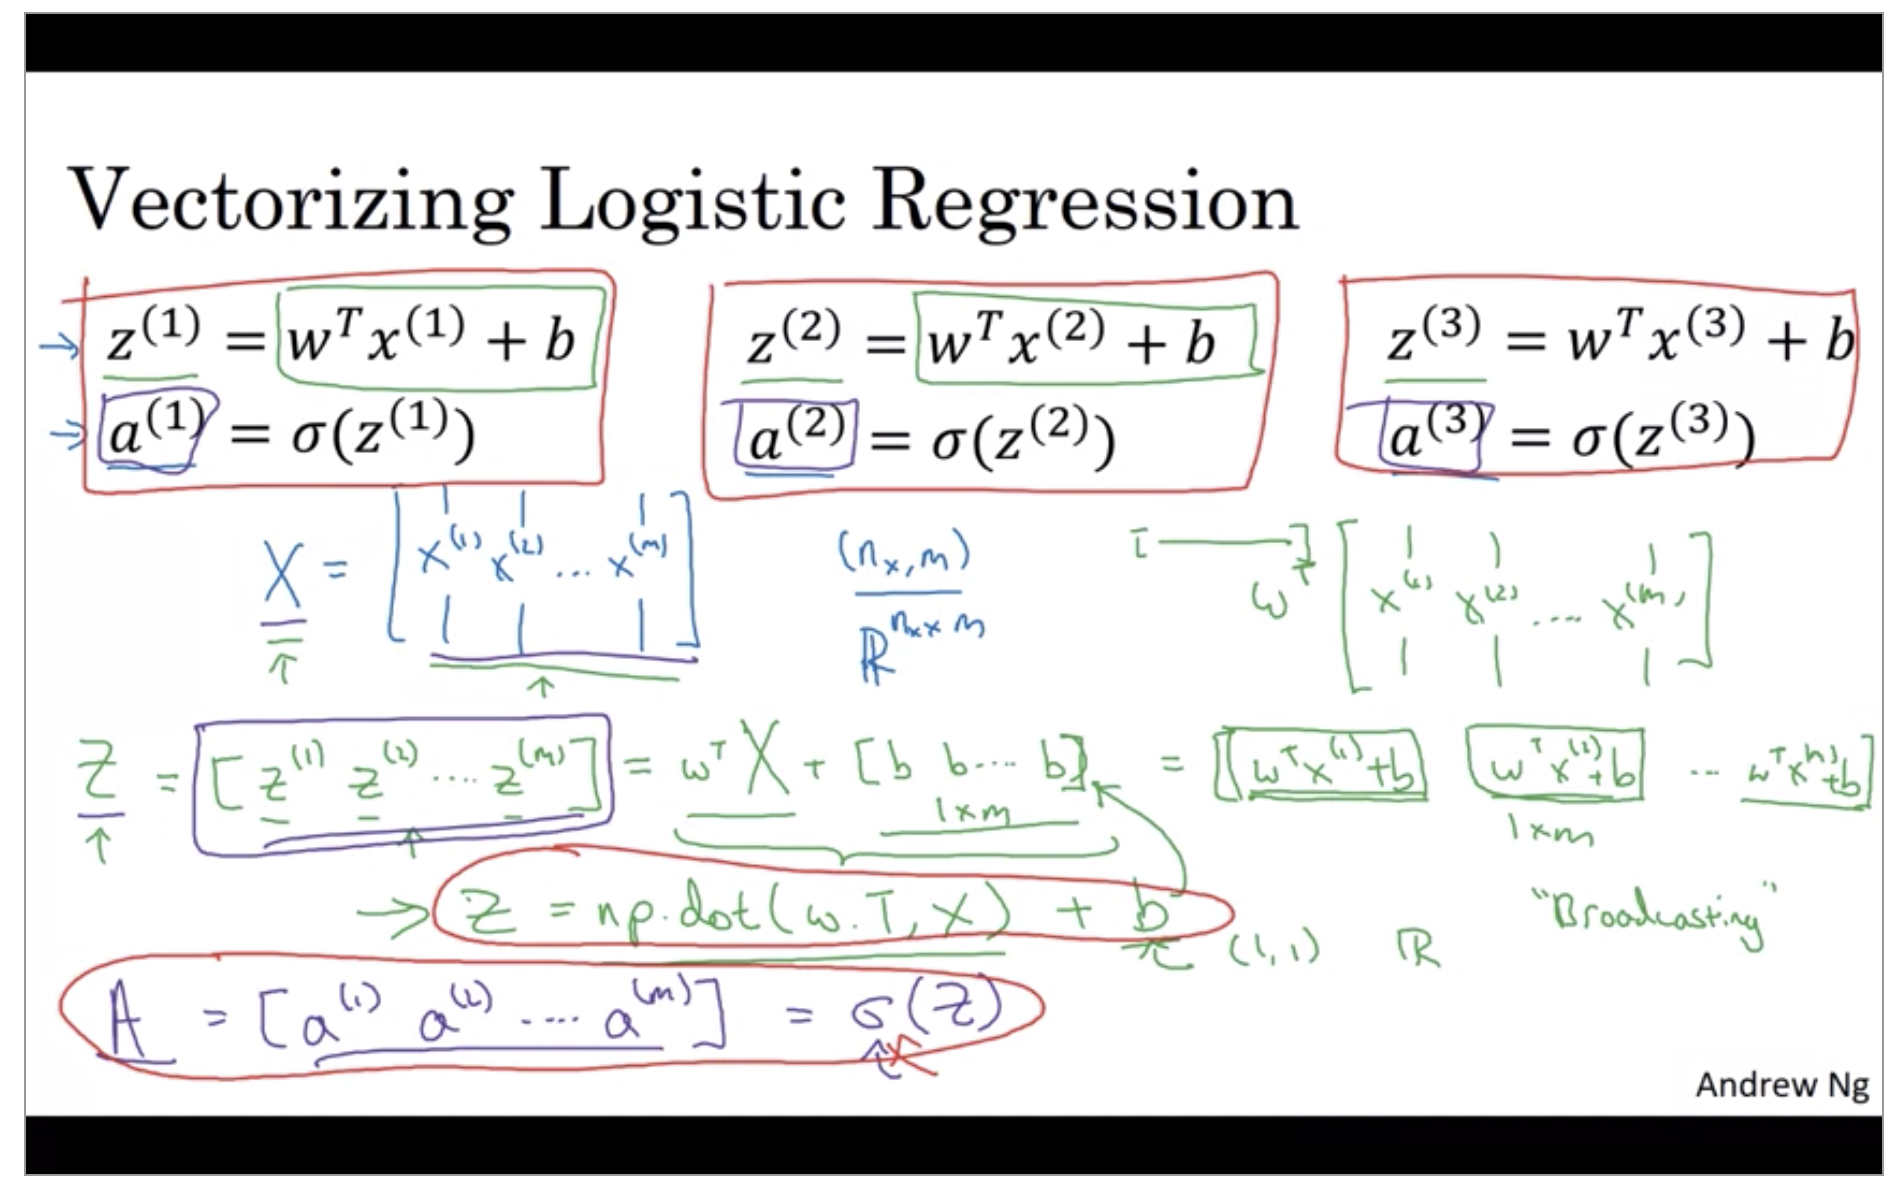 vectorizing-logistic-regression.png